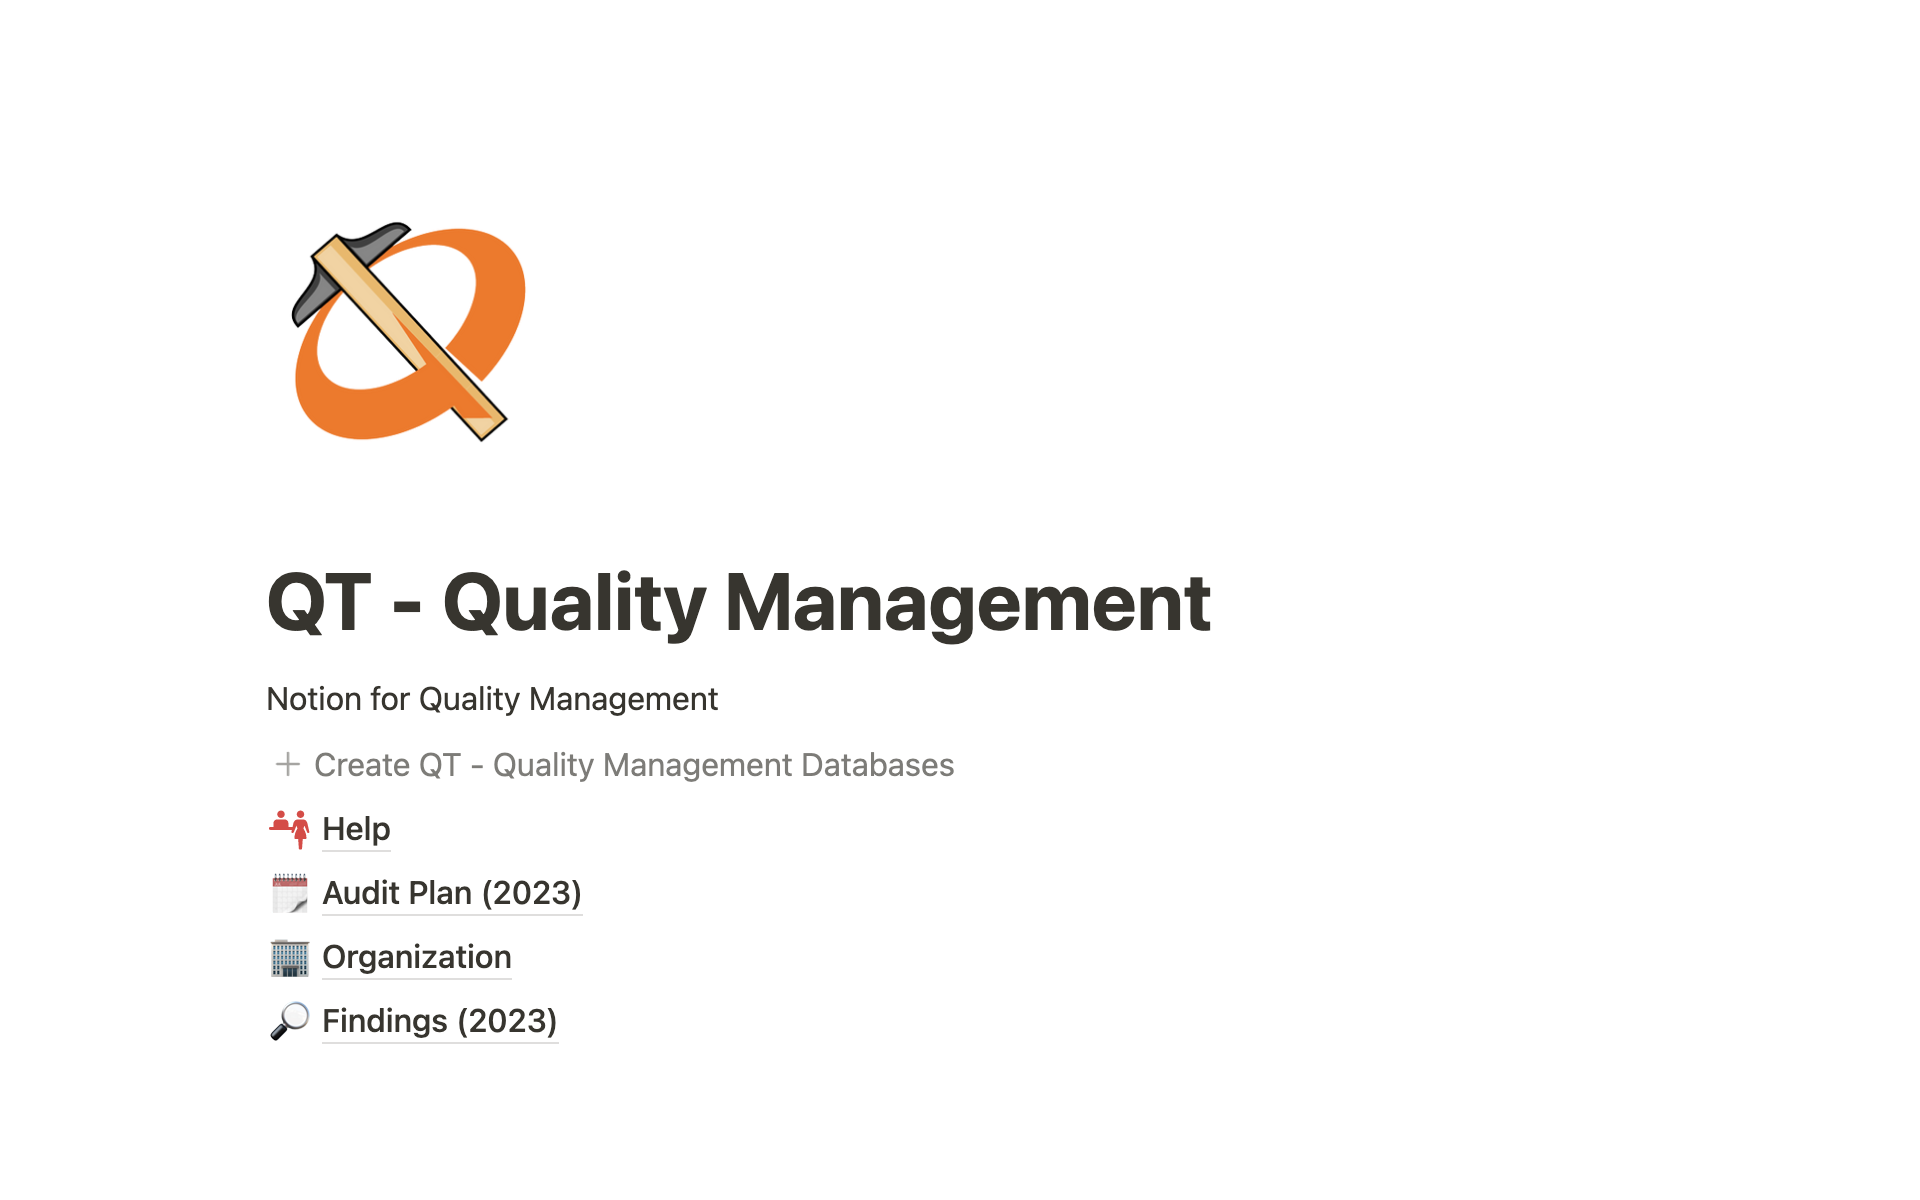 Uma prévia do modelo para QT - Quality Management